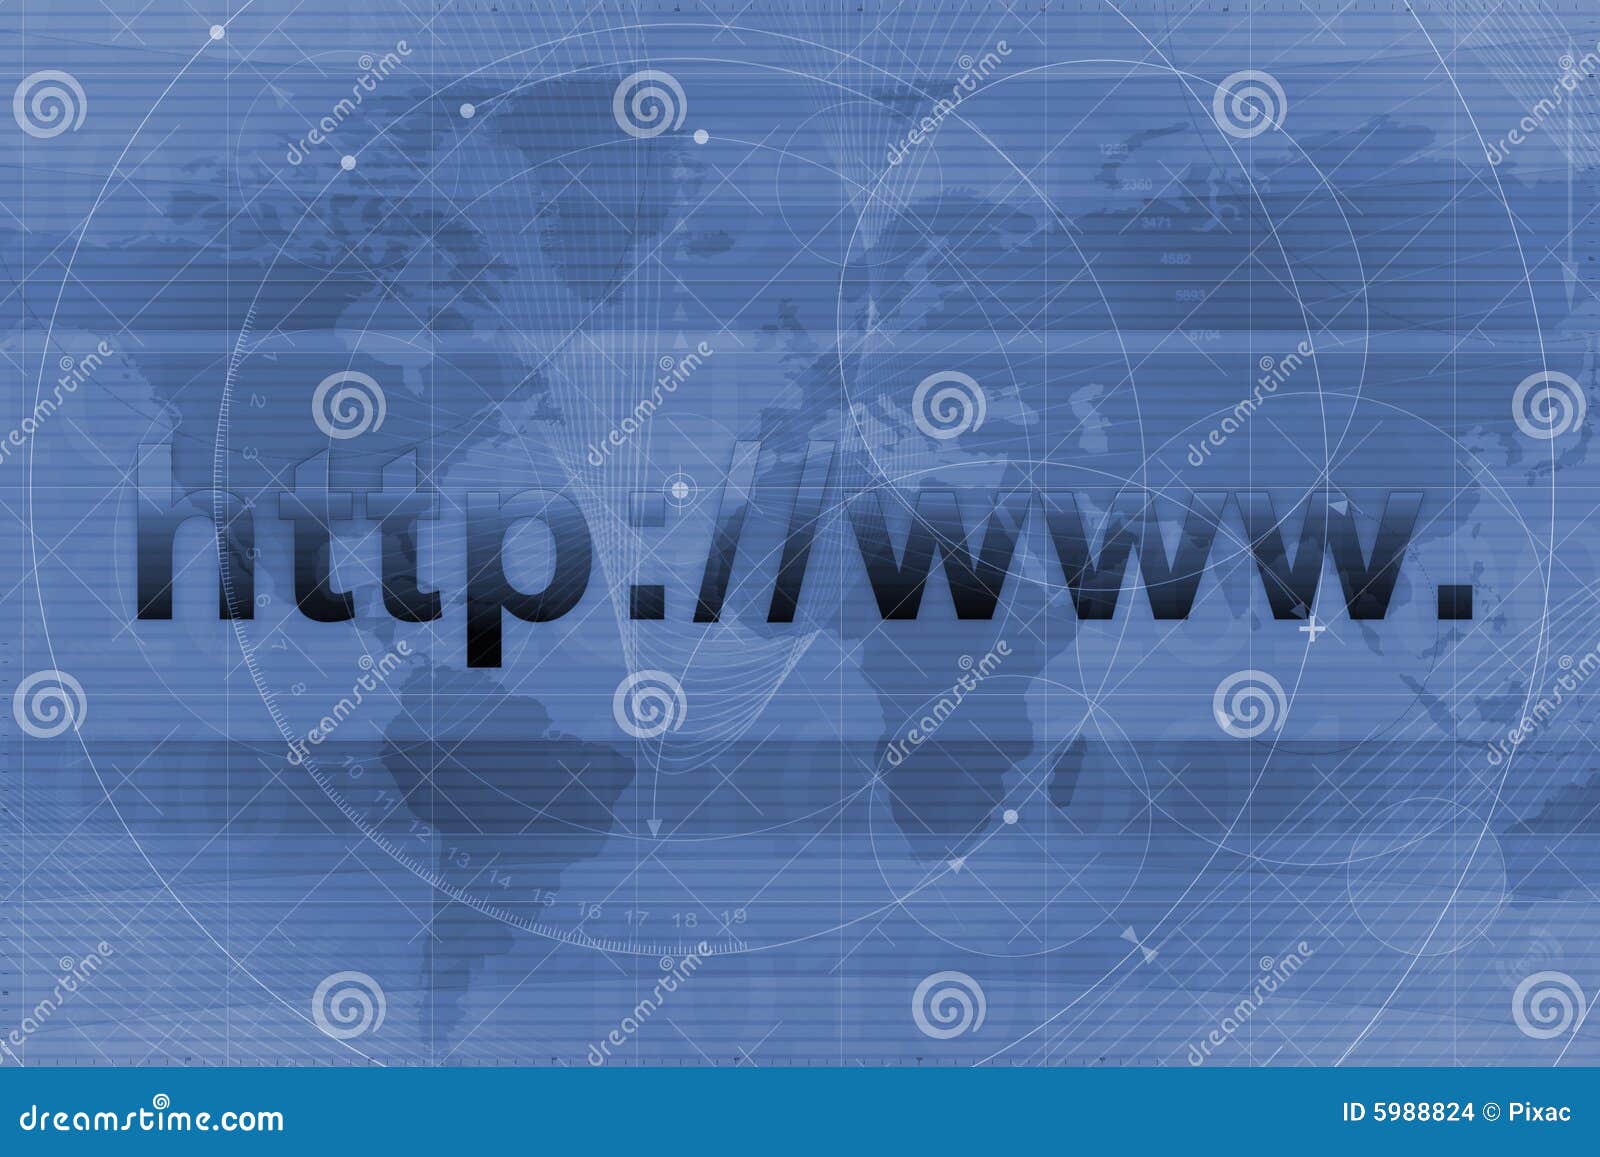 Website URL background stock illustration. Illustration of global - 5988824